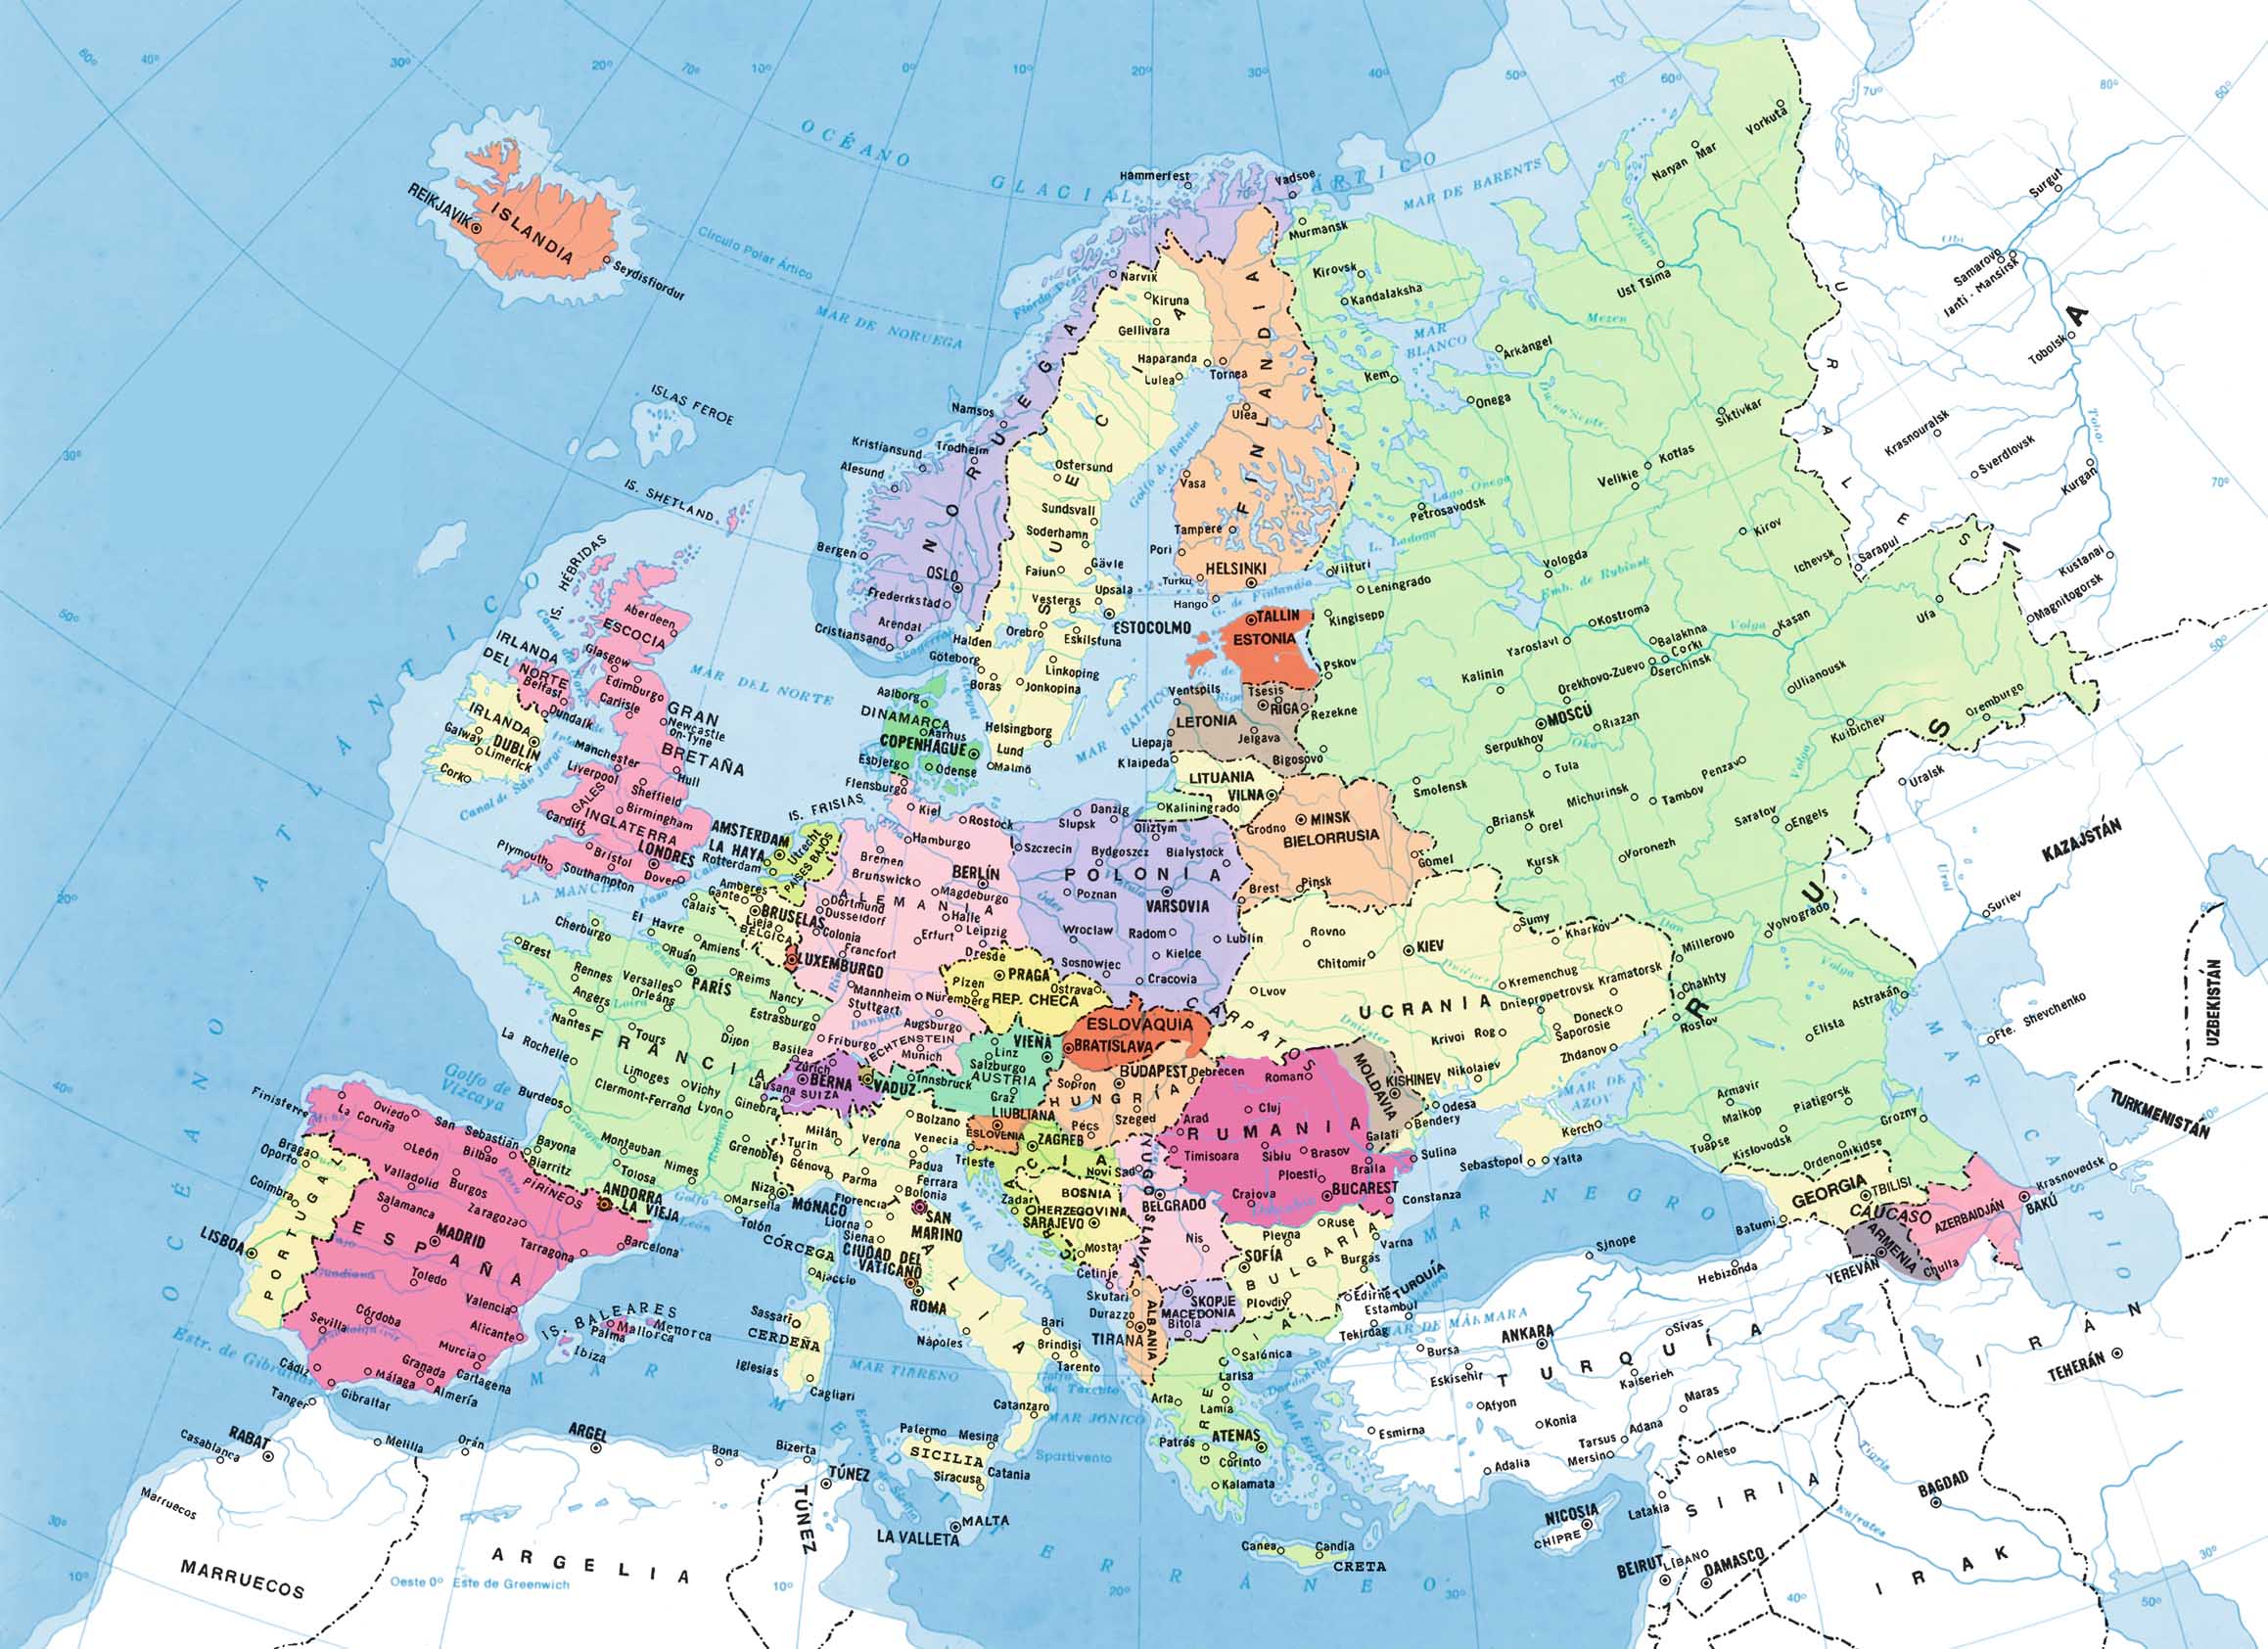 Europa Mapa Politico De Europa Mapa De Europa Mapa Paises Europa Images